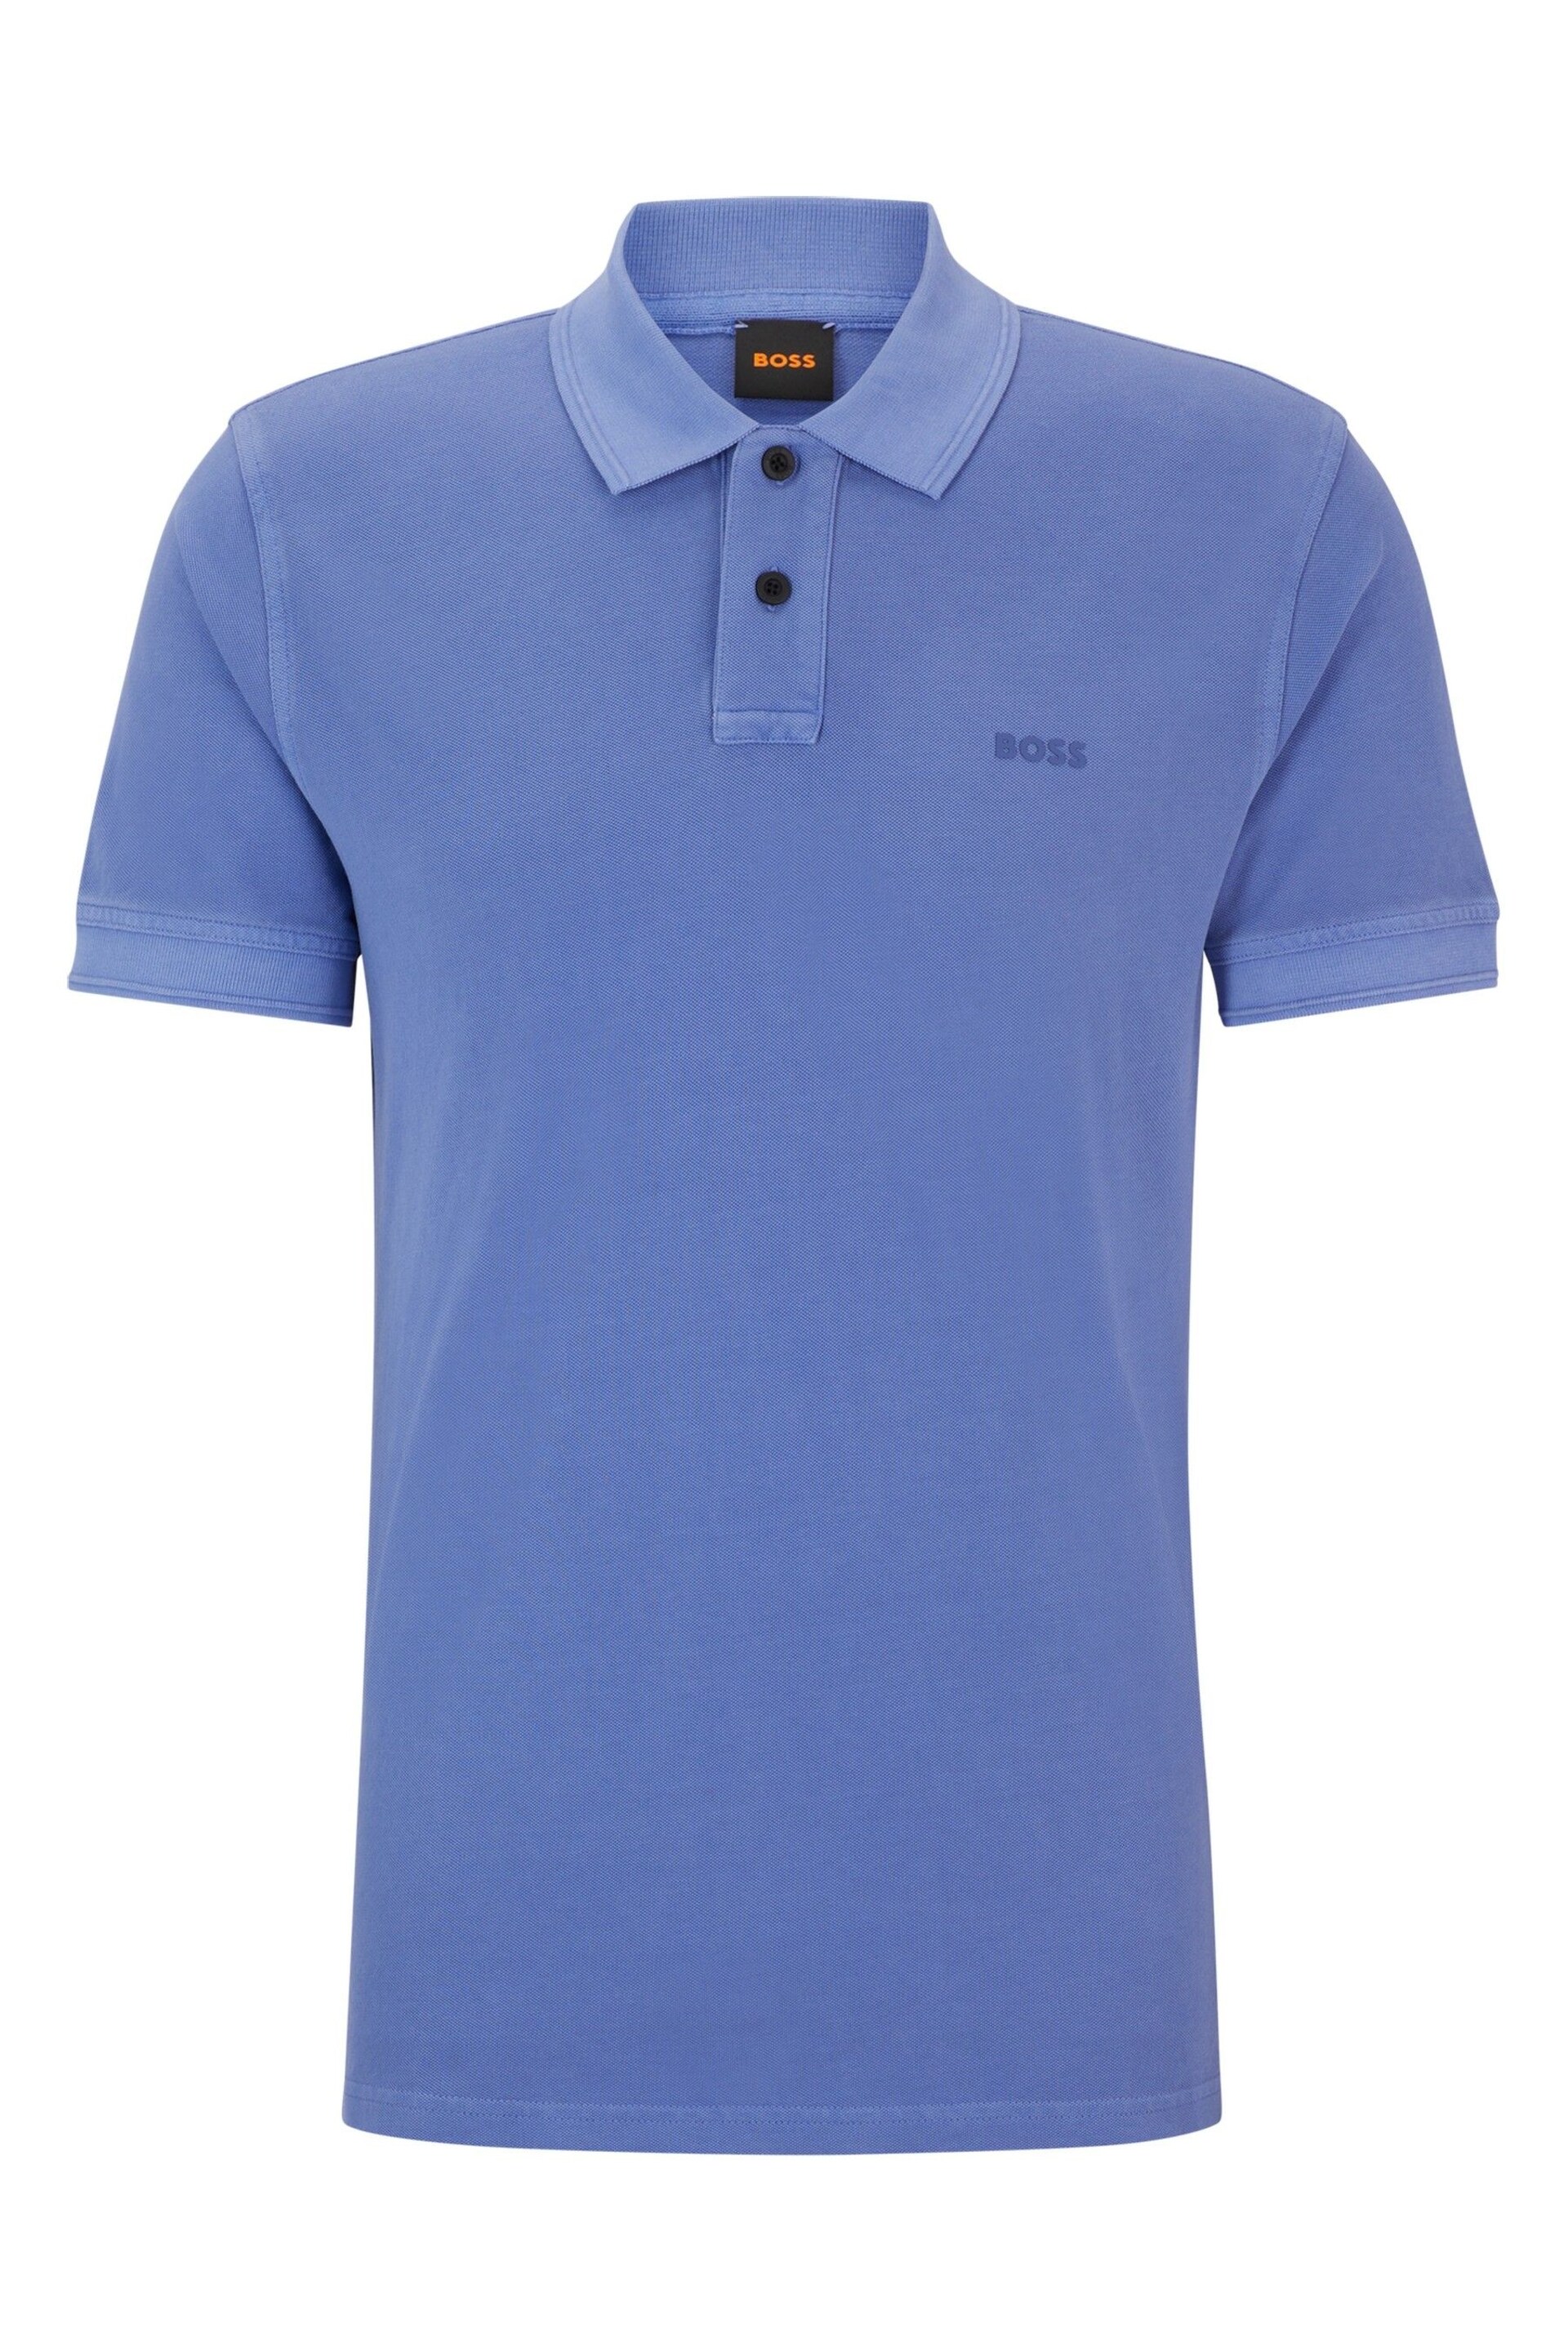 BOSS Purple Cotton Pique Polo Shirt - Image 5 of 5